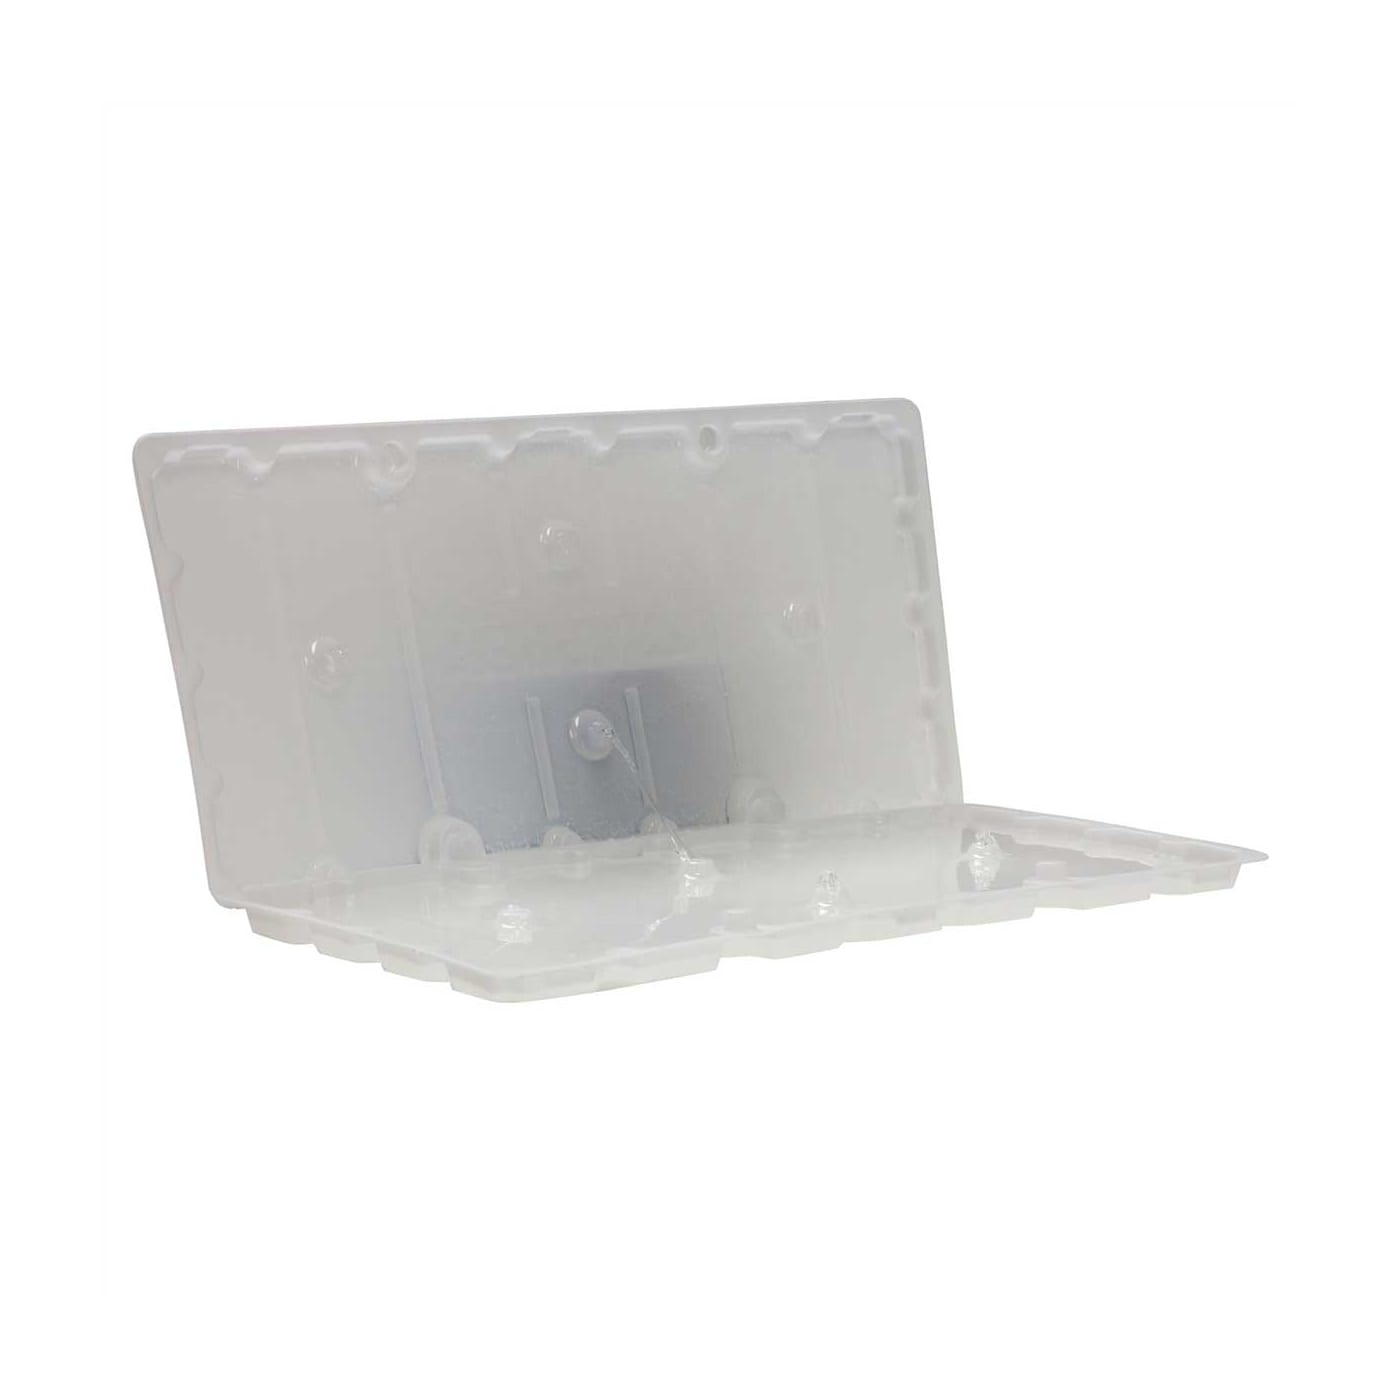 Rat glue trap with Plastic Tray Base K trap-NRTG005U